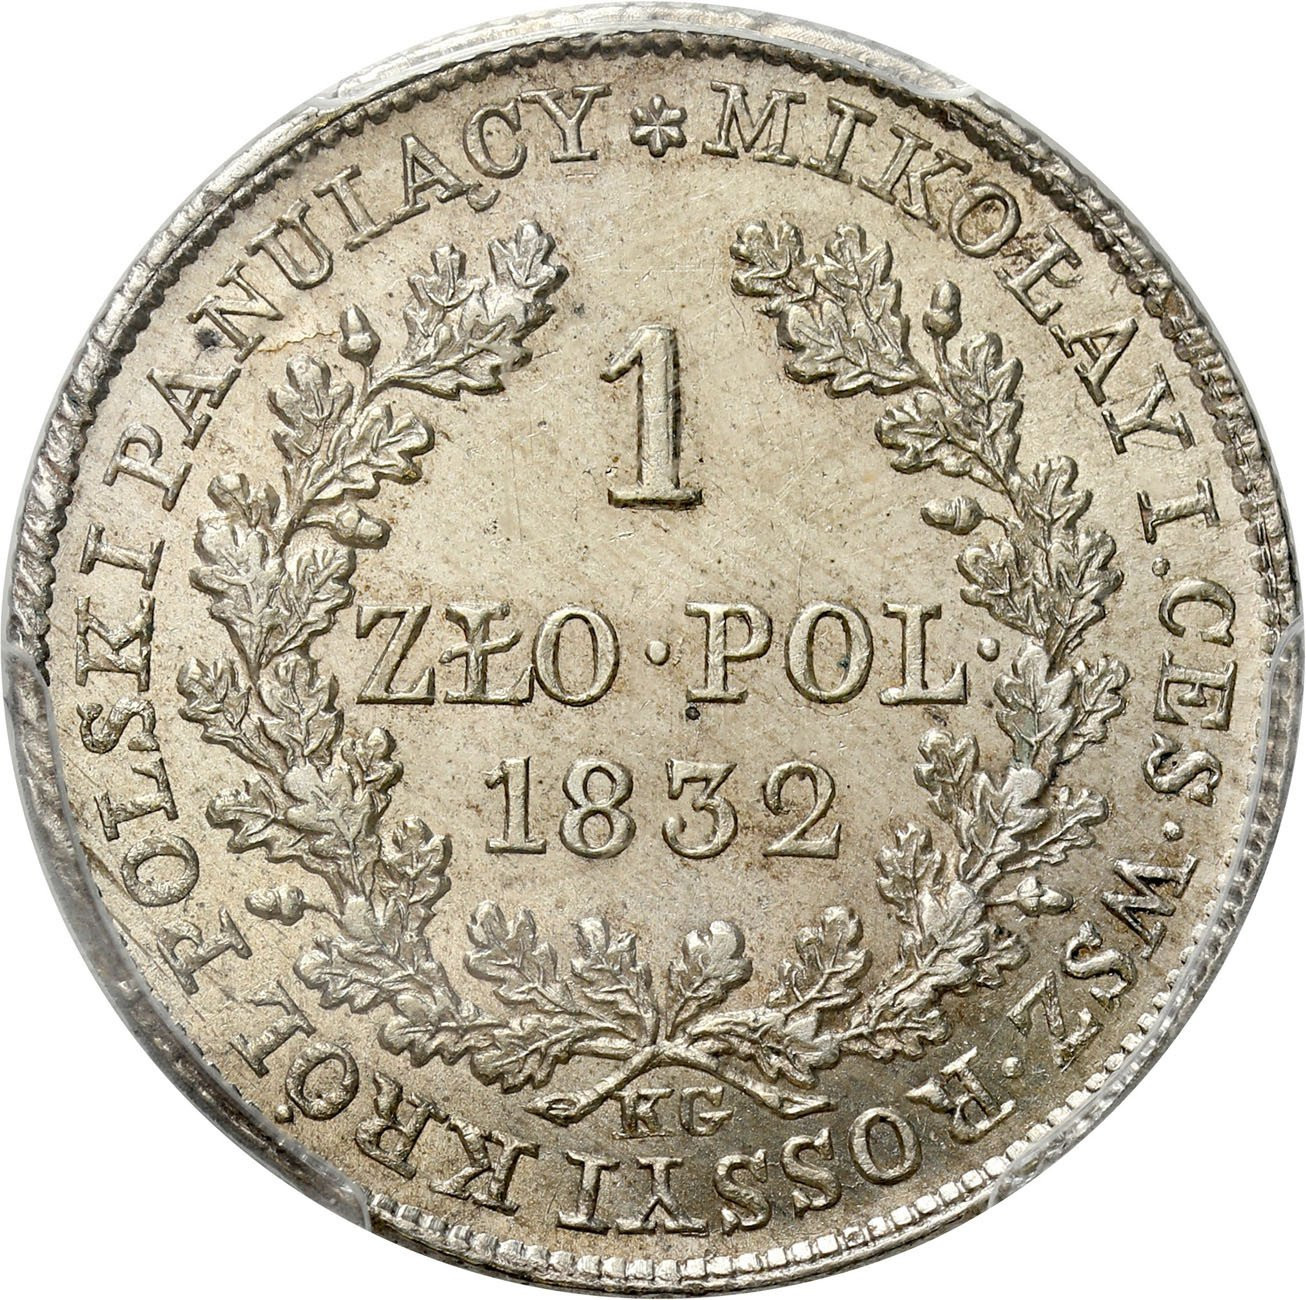 Królestwo Polskie/Rosja. Mikołaj I. 1 złoty 1832 KG, Warszawa - PCGS MS62 (2 MAX) – PIĘKNE